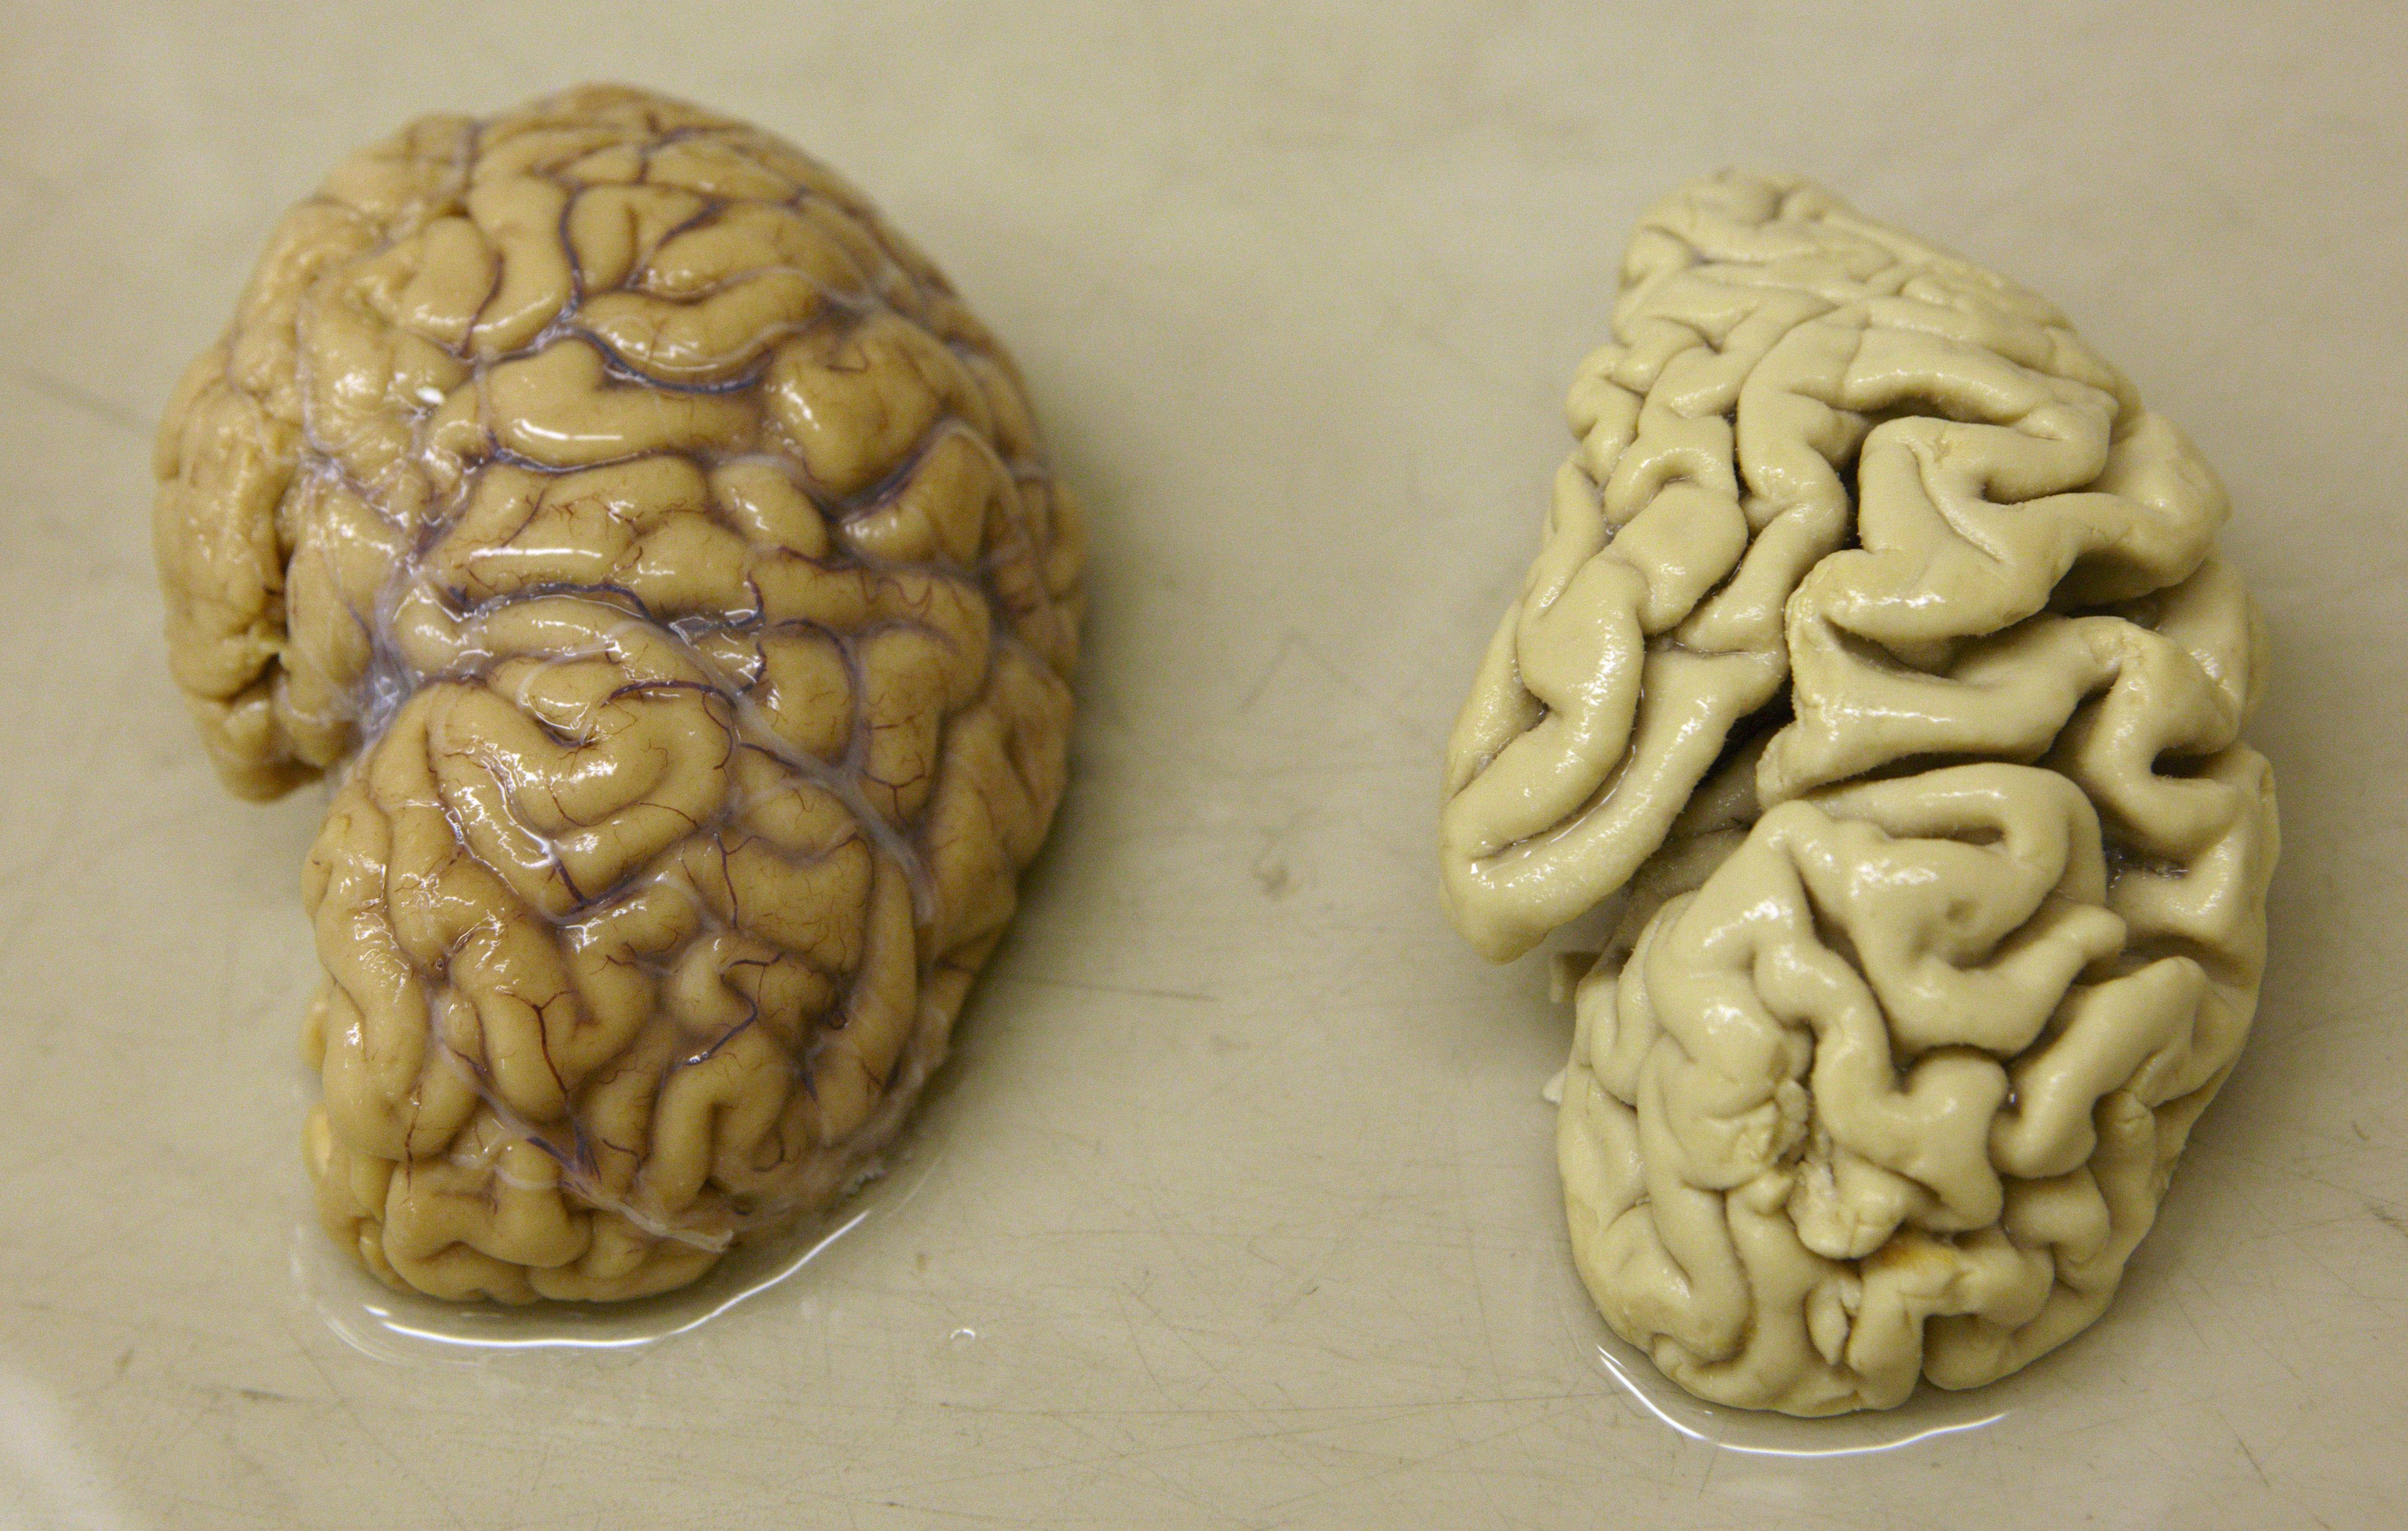 Un hemisferio de un cerebro sano (izquierda) junto a un hemisferio de un cerebro de una persona con la enfermedad de Alzheimer (derecha).